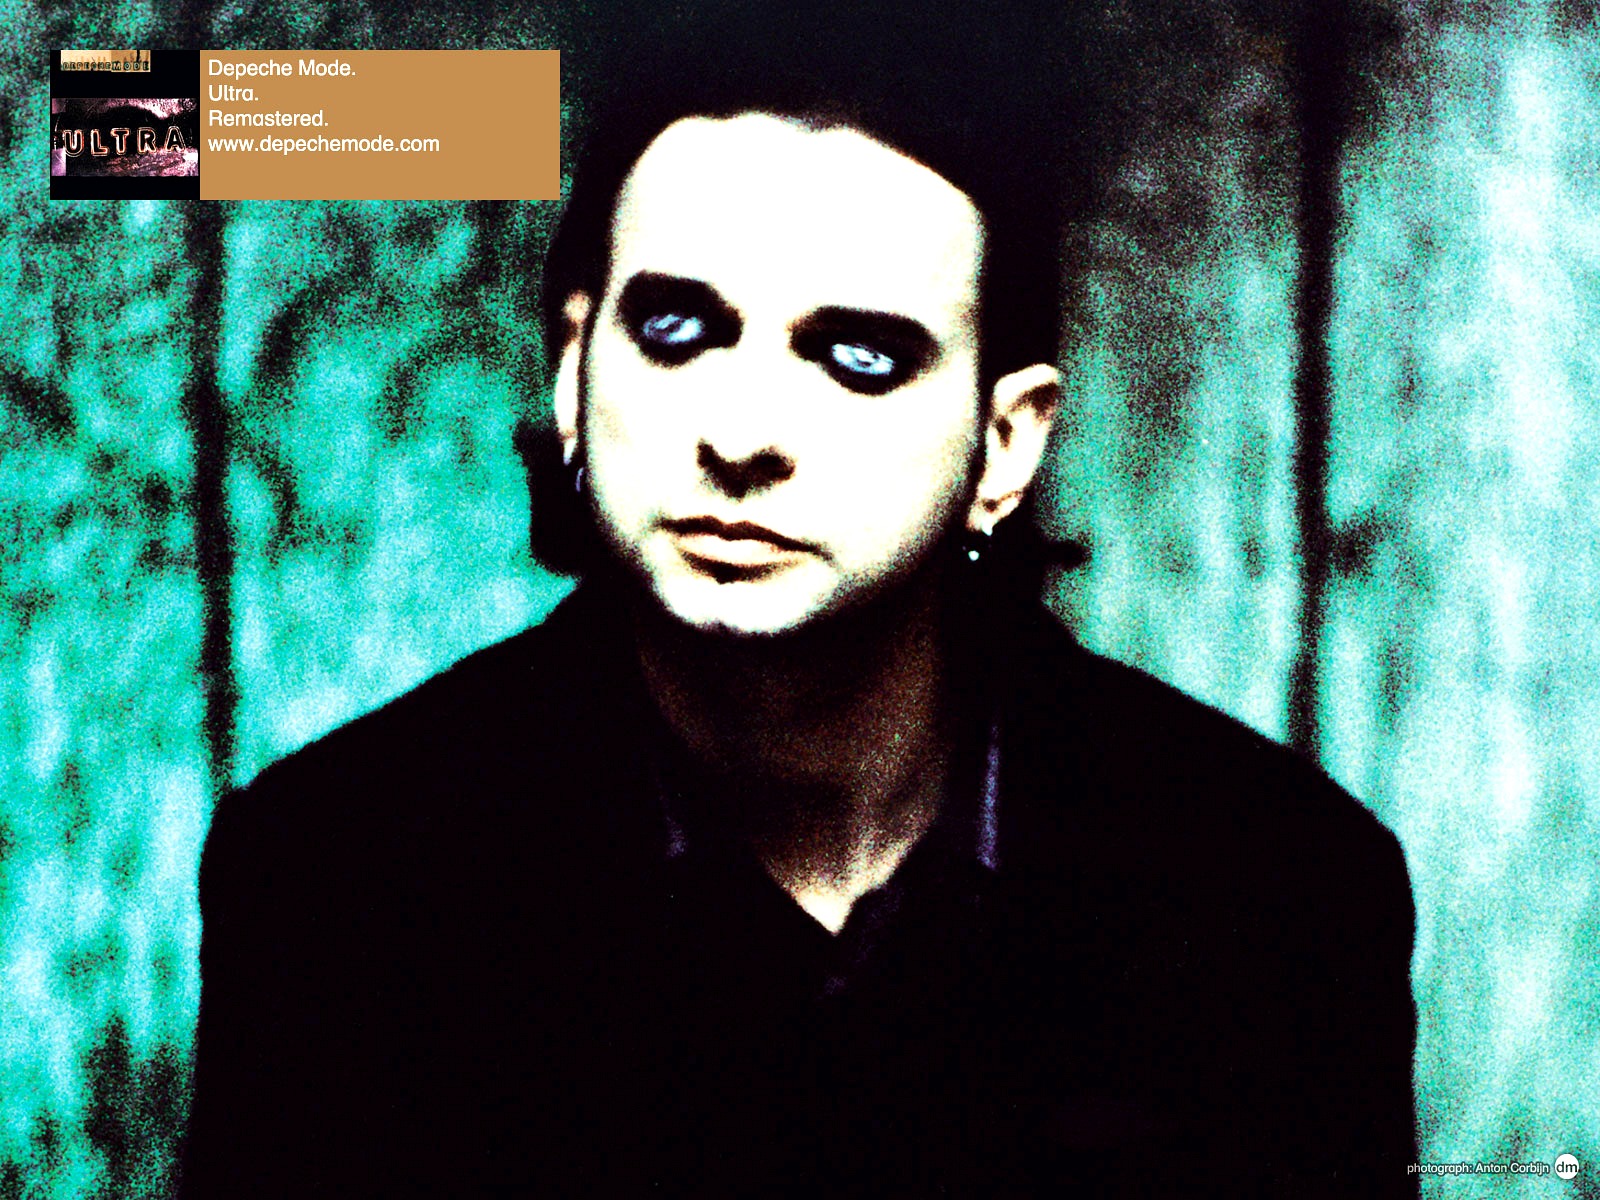 Depeche Mode - Ultra - Dave Gahan - Wallpaper - Depeche Mode Ultra Remastered - HD Wallpaper 